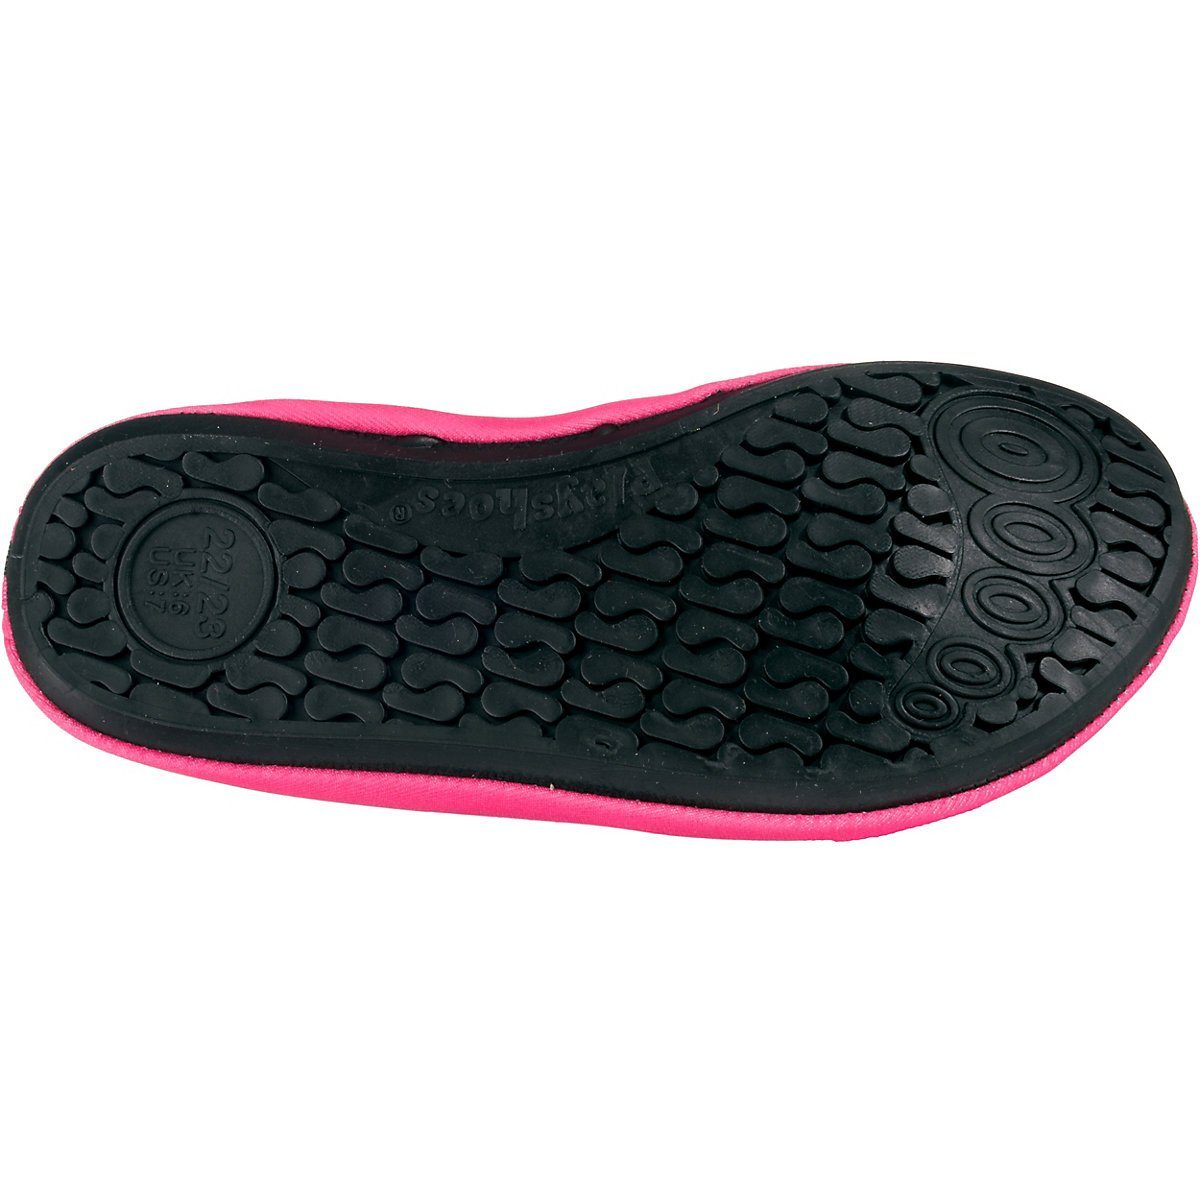 Playshoes Badeschuhe Wasserschuhe Schwimmschuhe, Barfuß-Schuh Passform, rosa mit Sohle flexible Motiv Badeschuh rutschhemmender Meerjungfrau